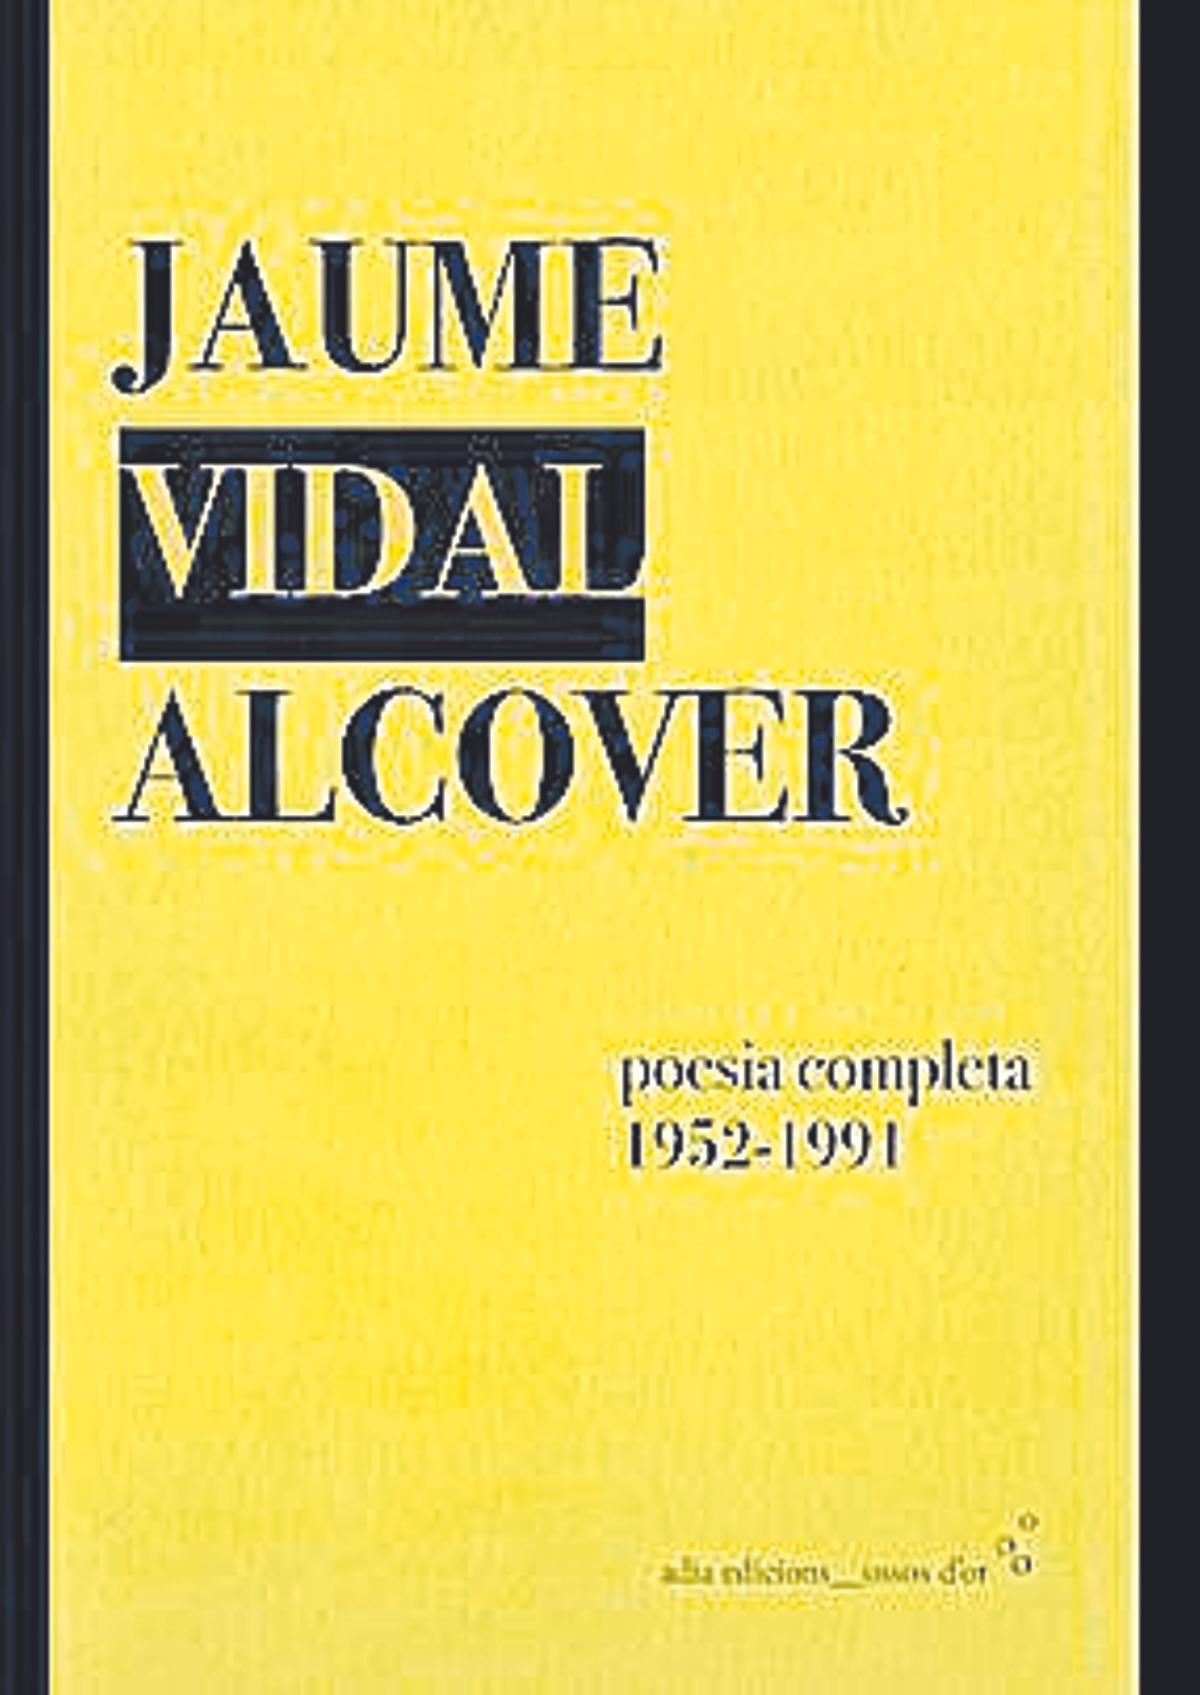 Portada del llibre: Poesia Completa, de Jaume Vidal Alcover.